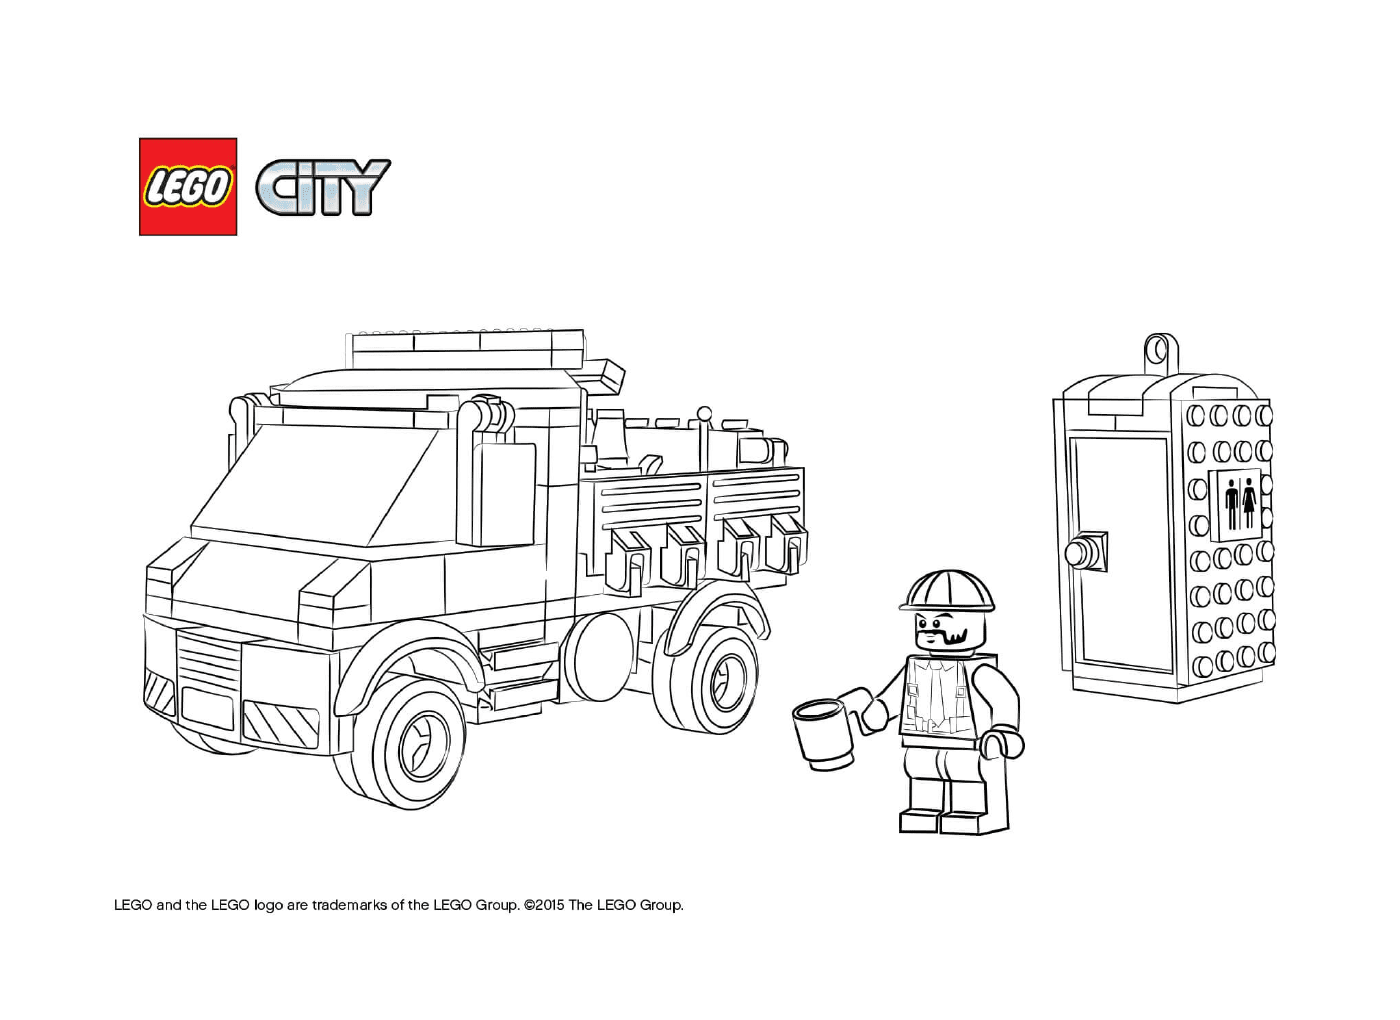  लेगो सिटी सेवा ट्रक 